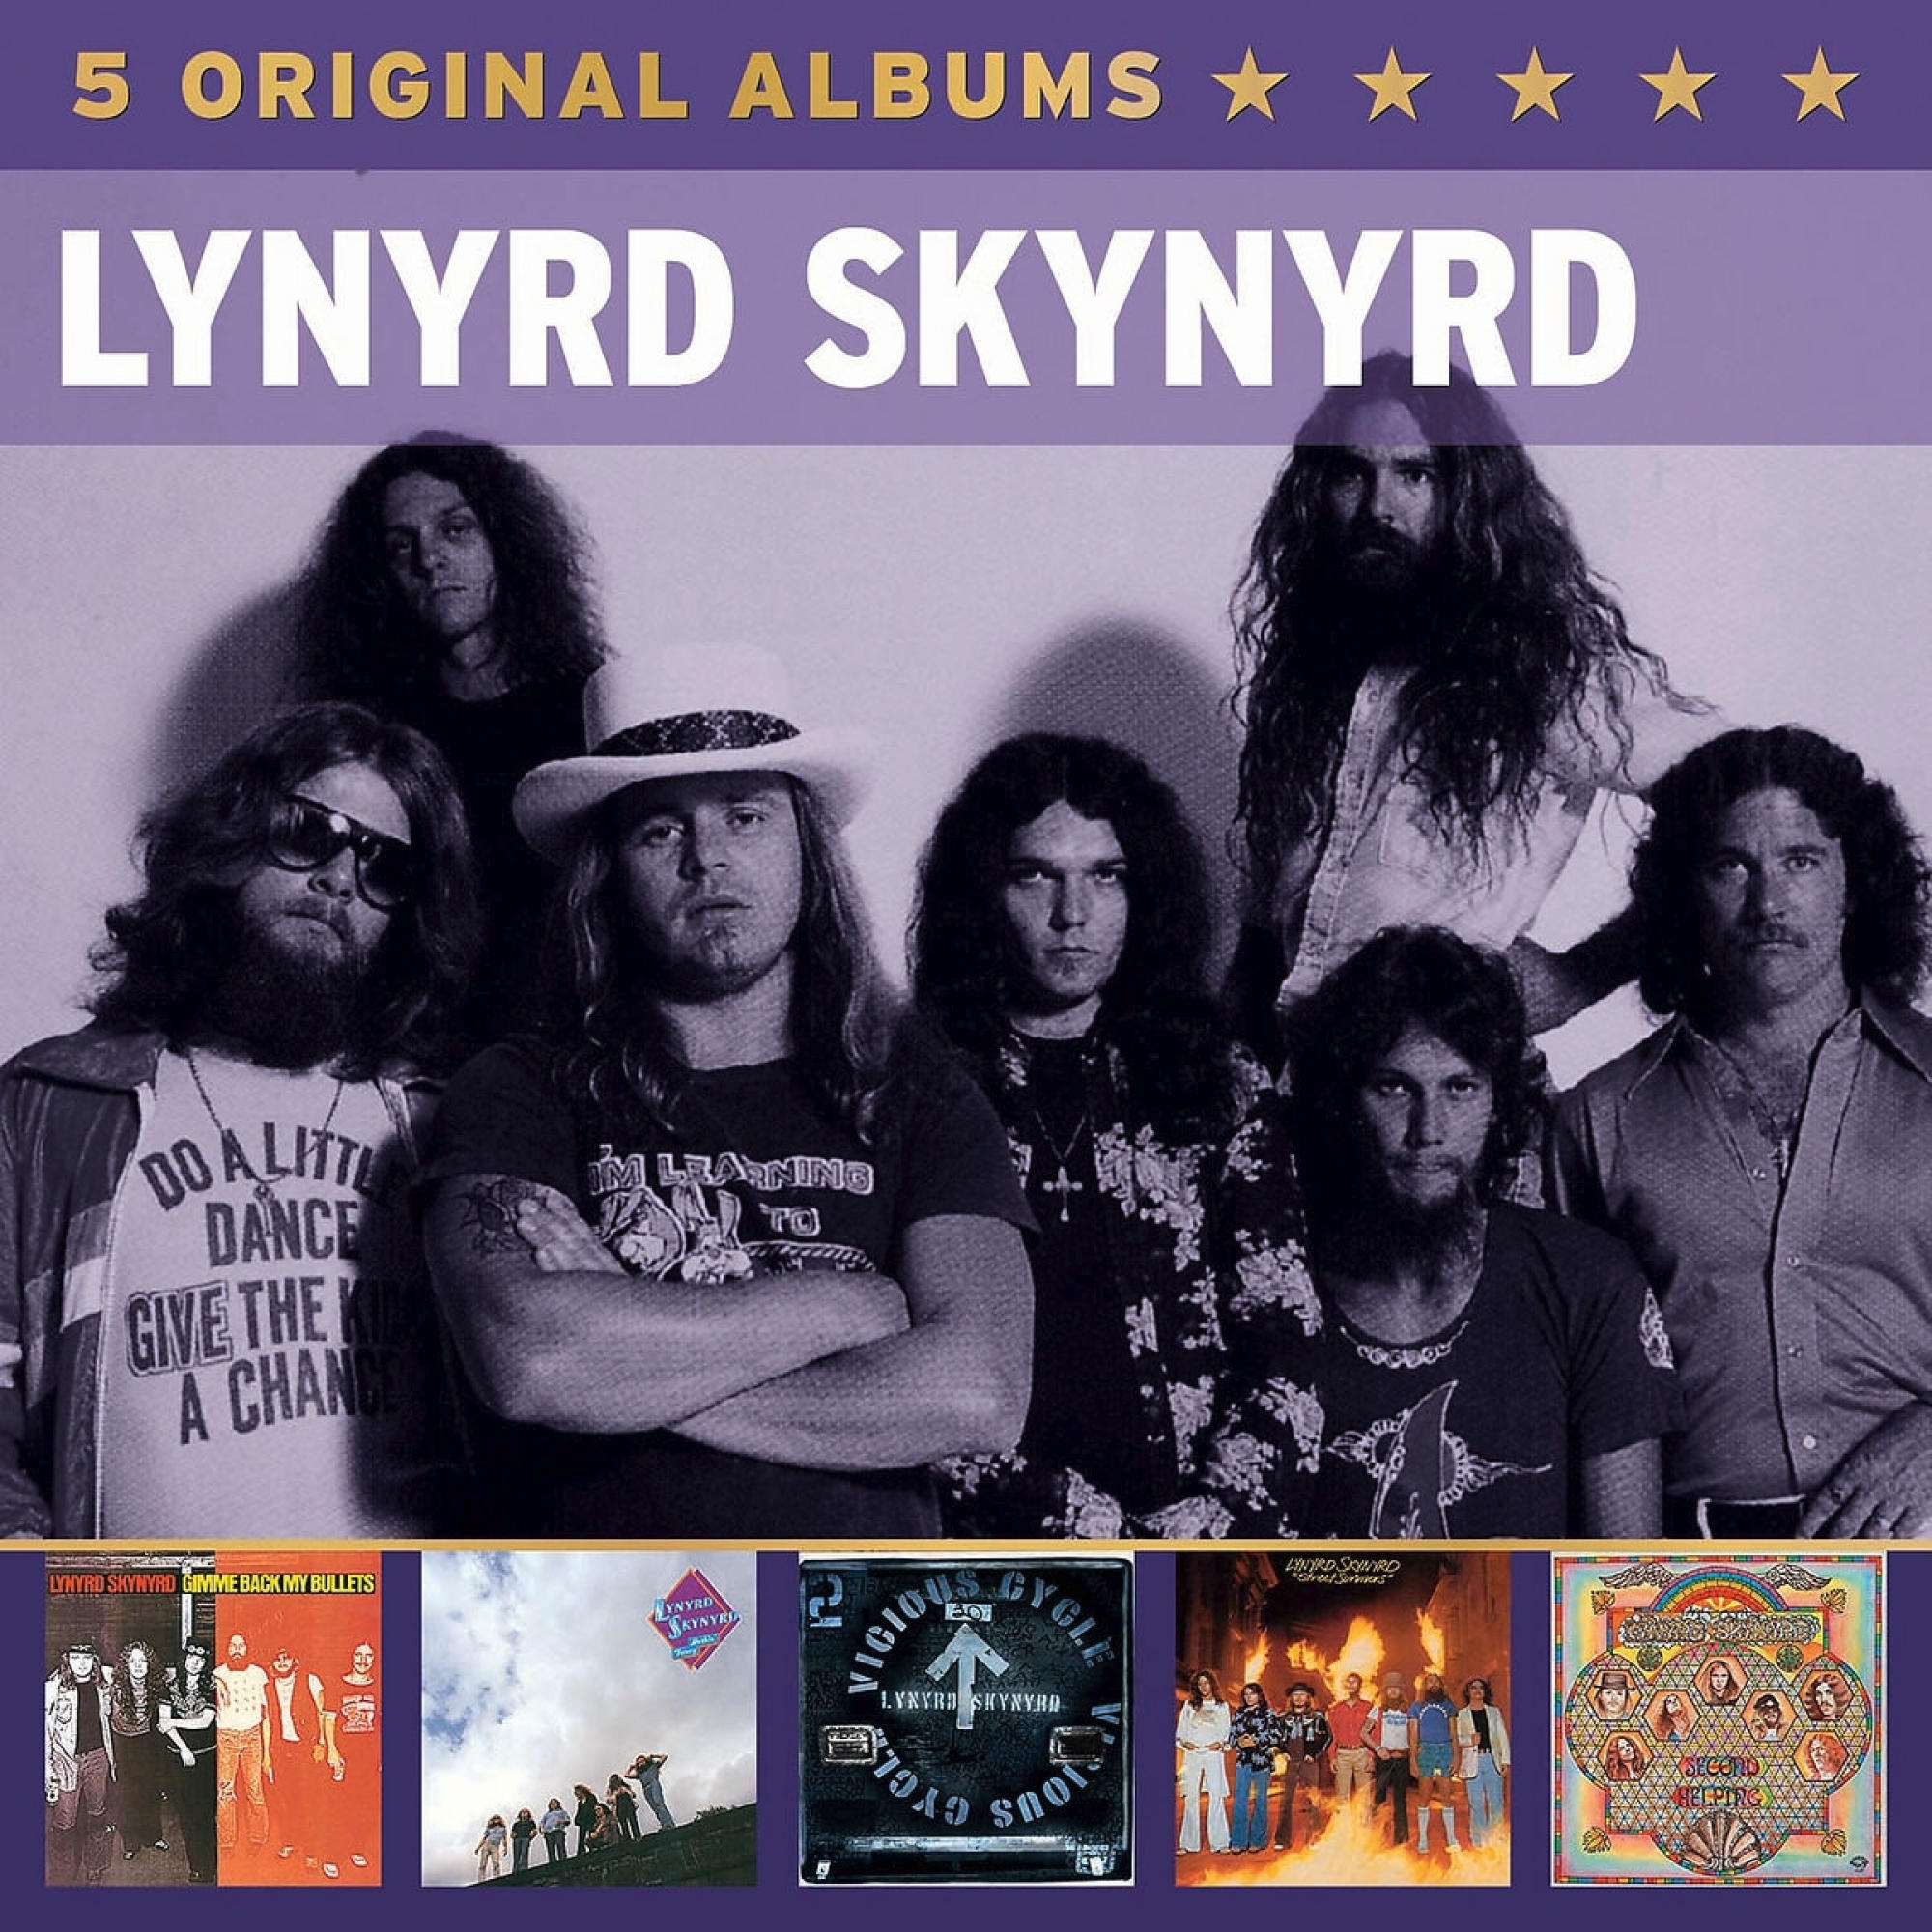 (CD) - Original - Albums Skynyrd 5 Lynyrd